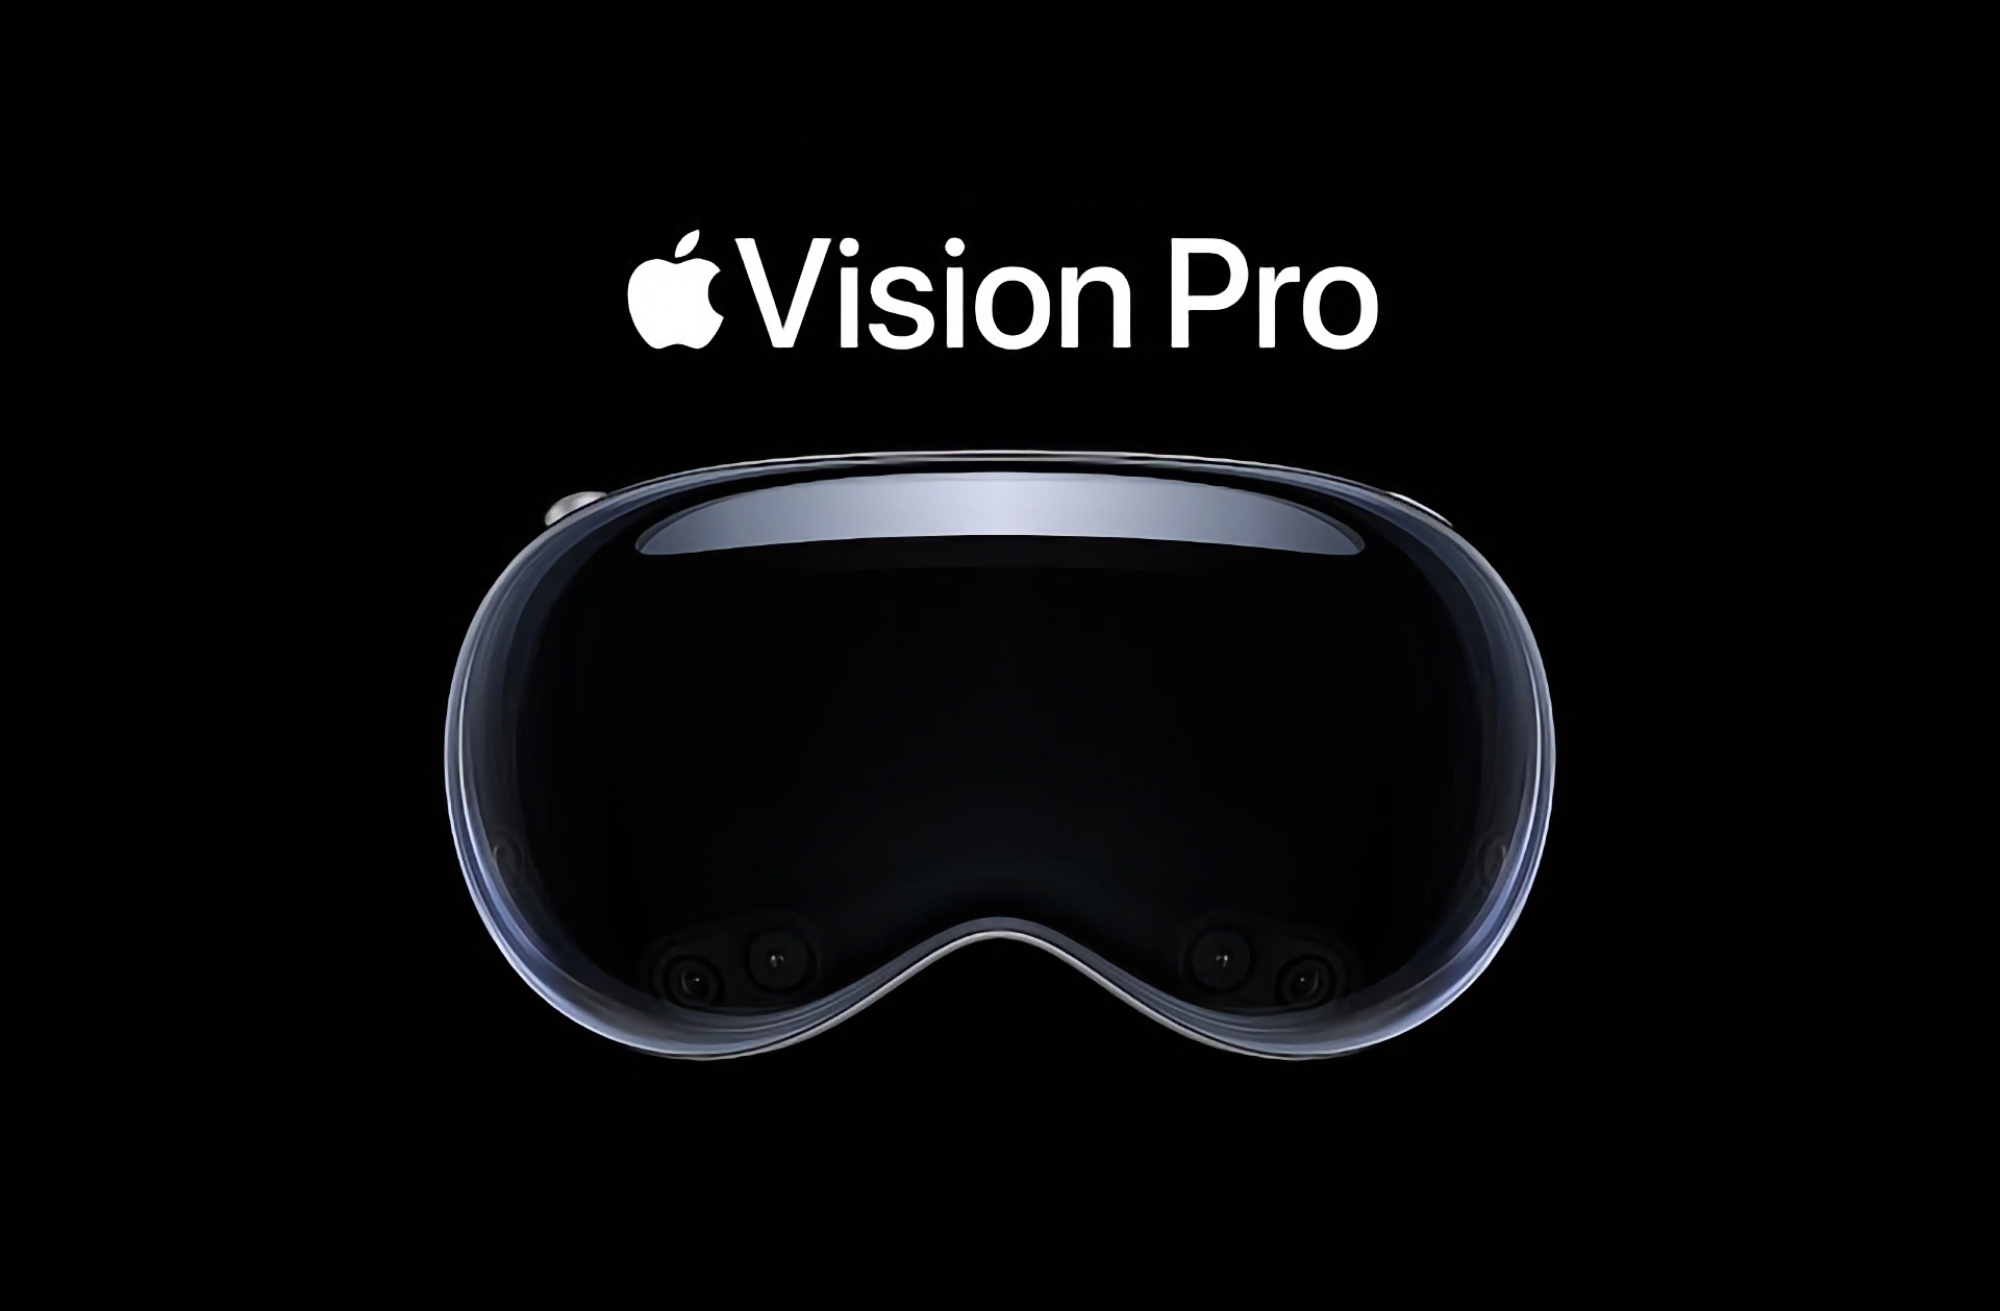 Plotka: Apple wypuści zestaw słuchawkowy Vision Pro 26 lub 27 stycznia